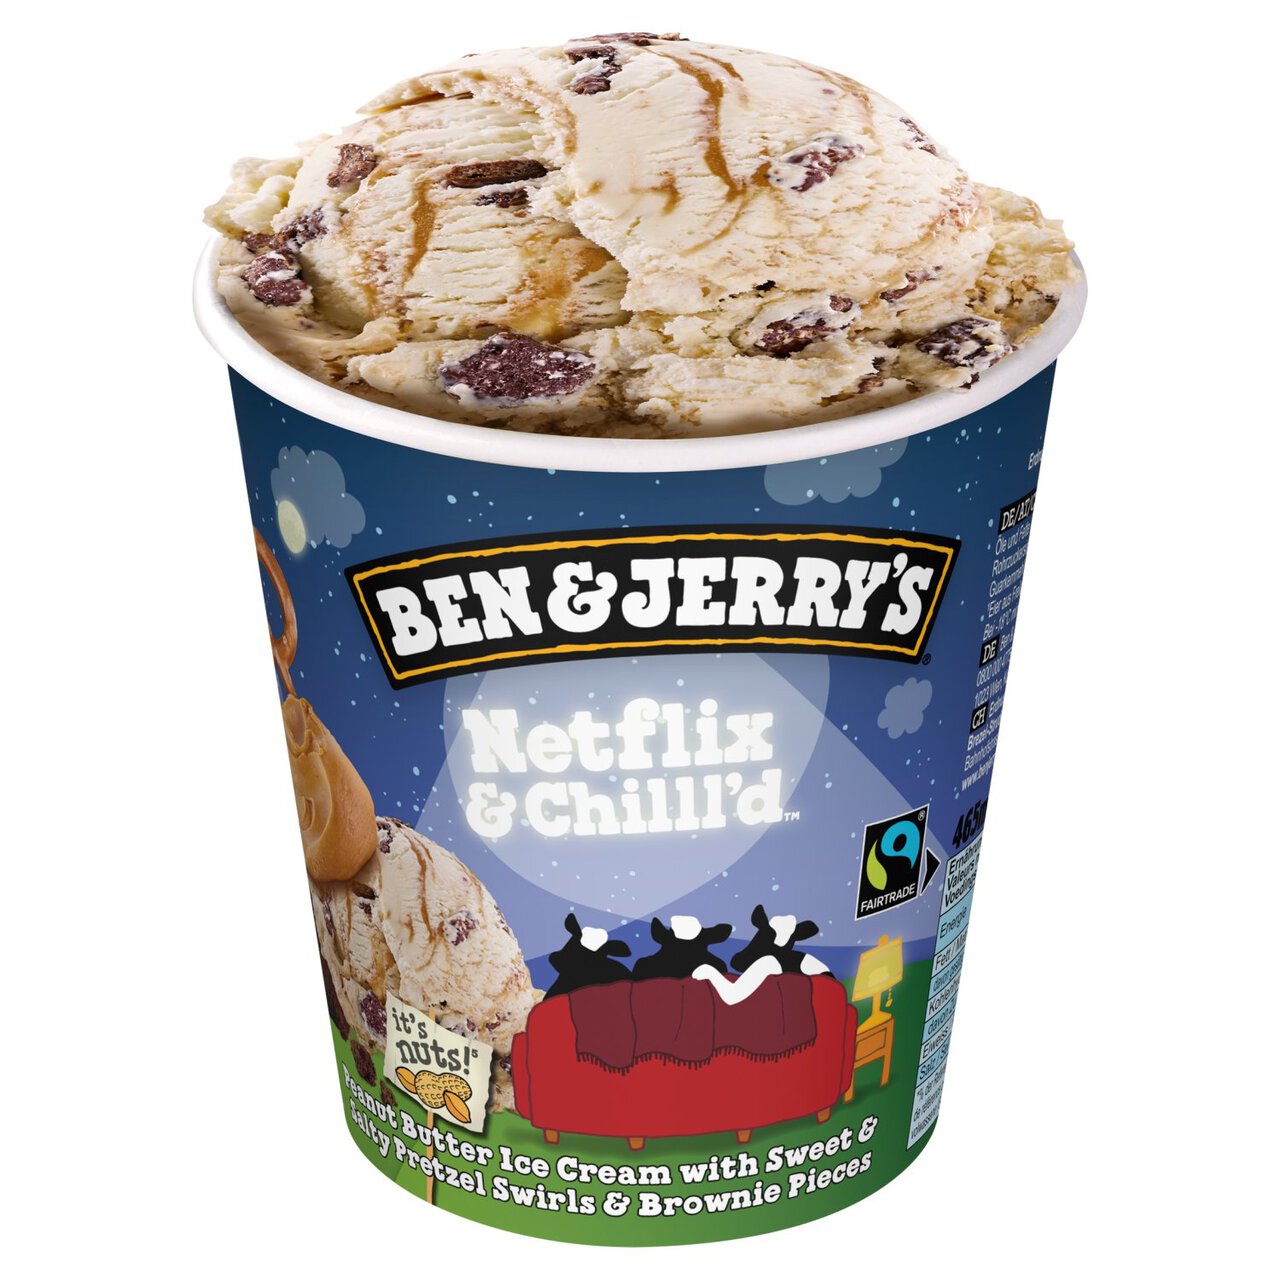 Ben & Jerry's Netflix & Chilll'd Peanut Butter Ice Cream Tub 465ml